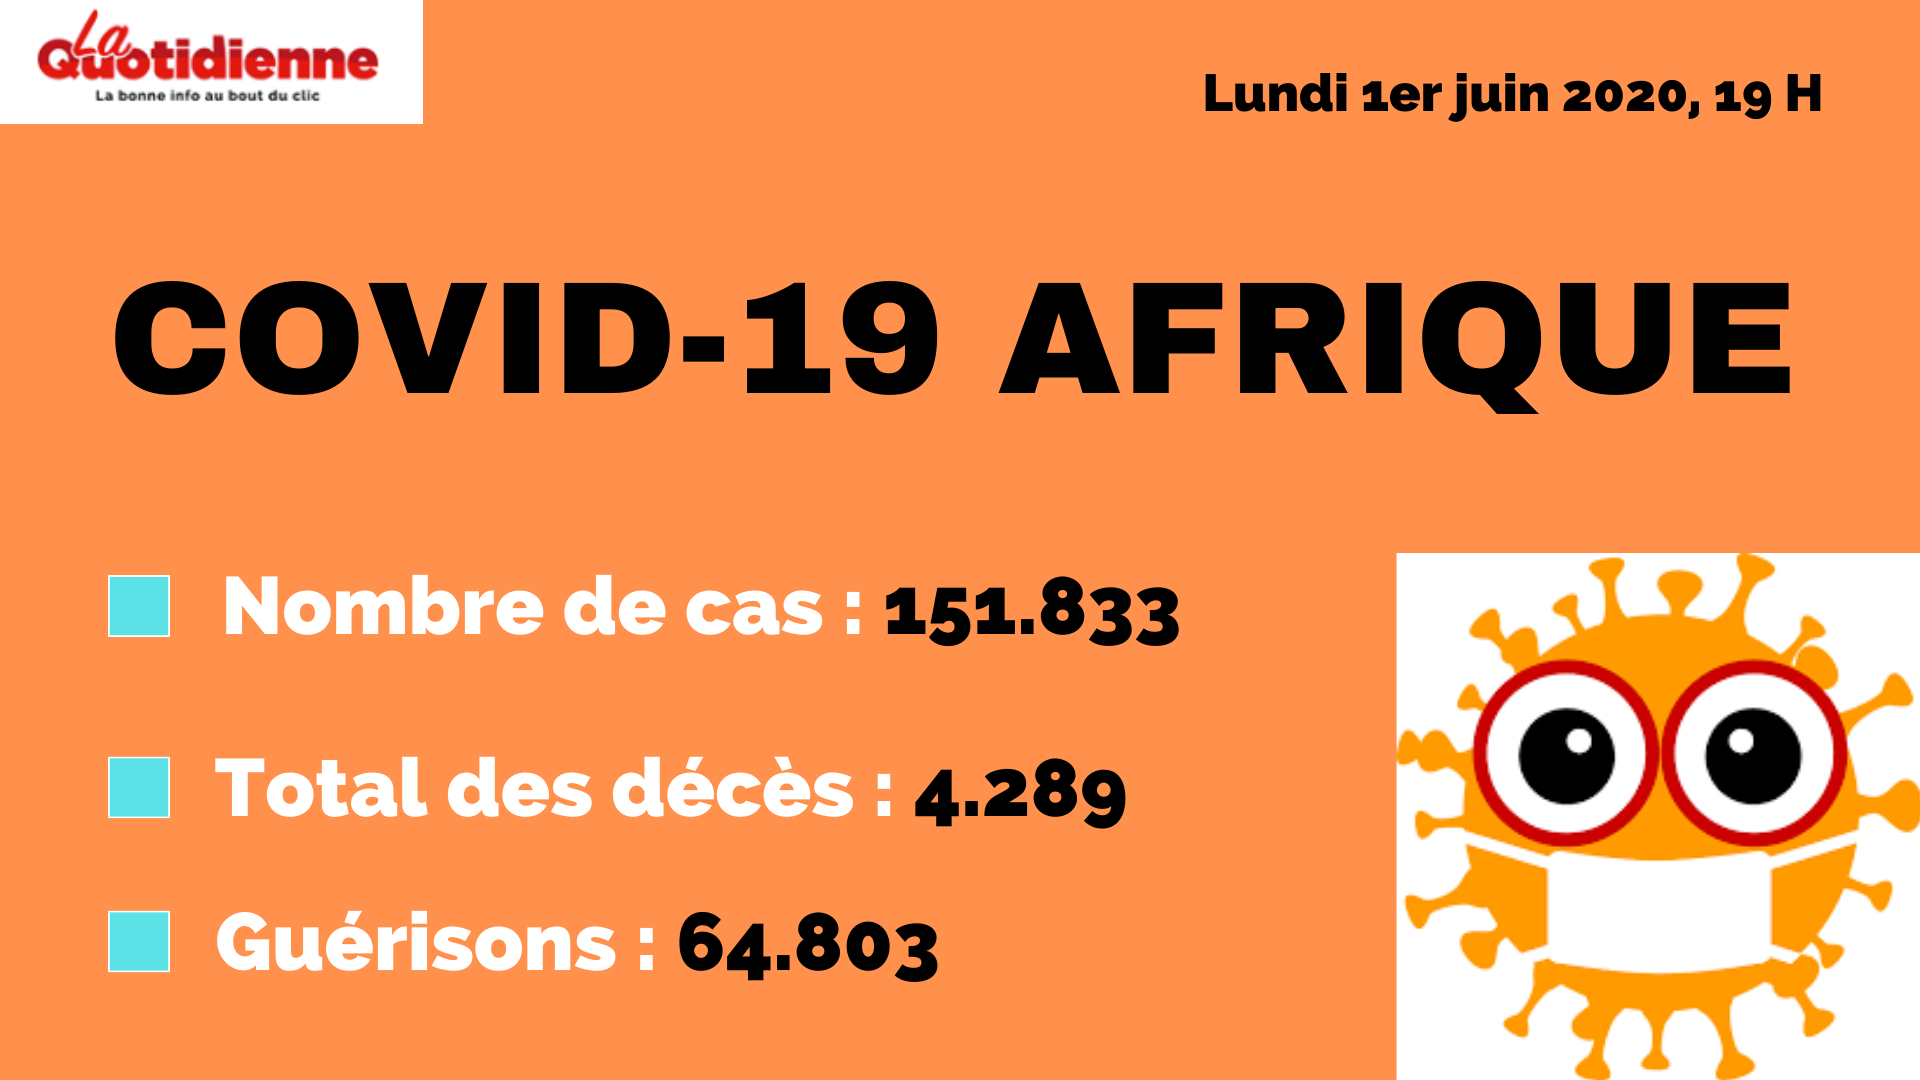 Covid-19 : Bilan de la pandémie en Afrique, le 1er juin